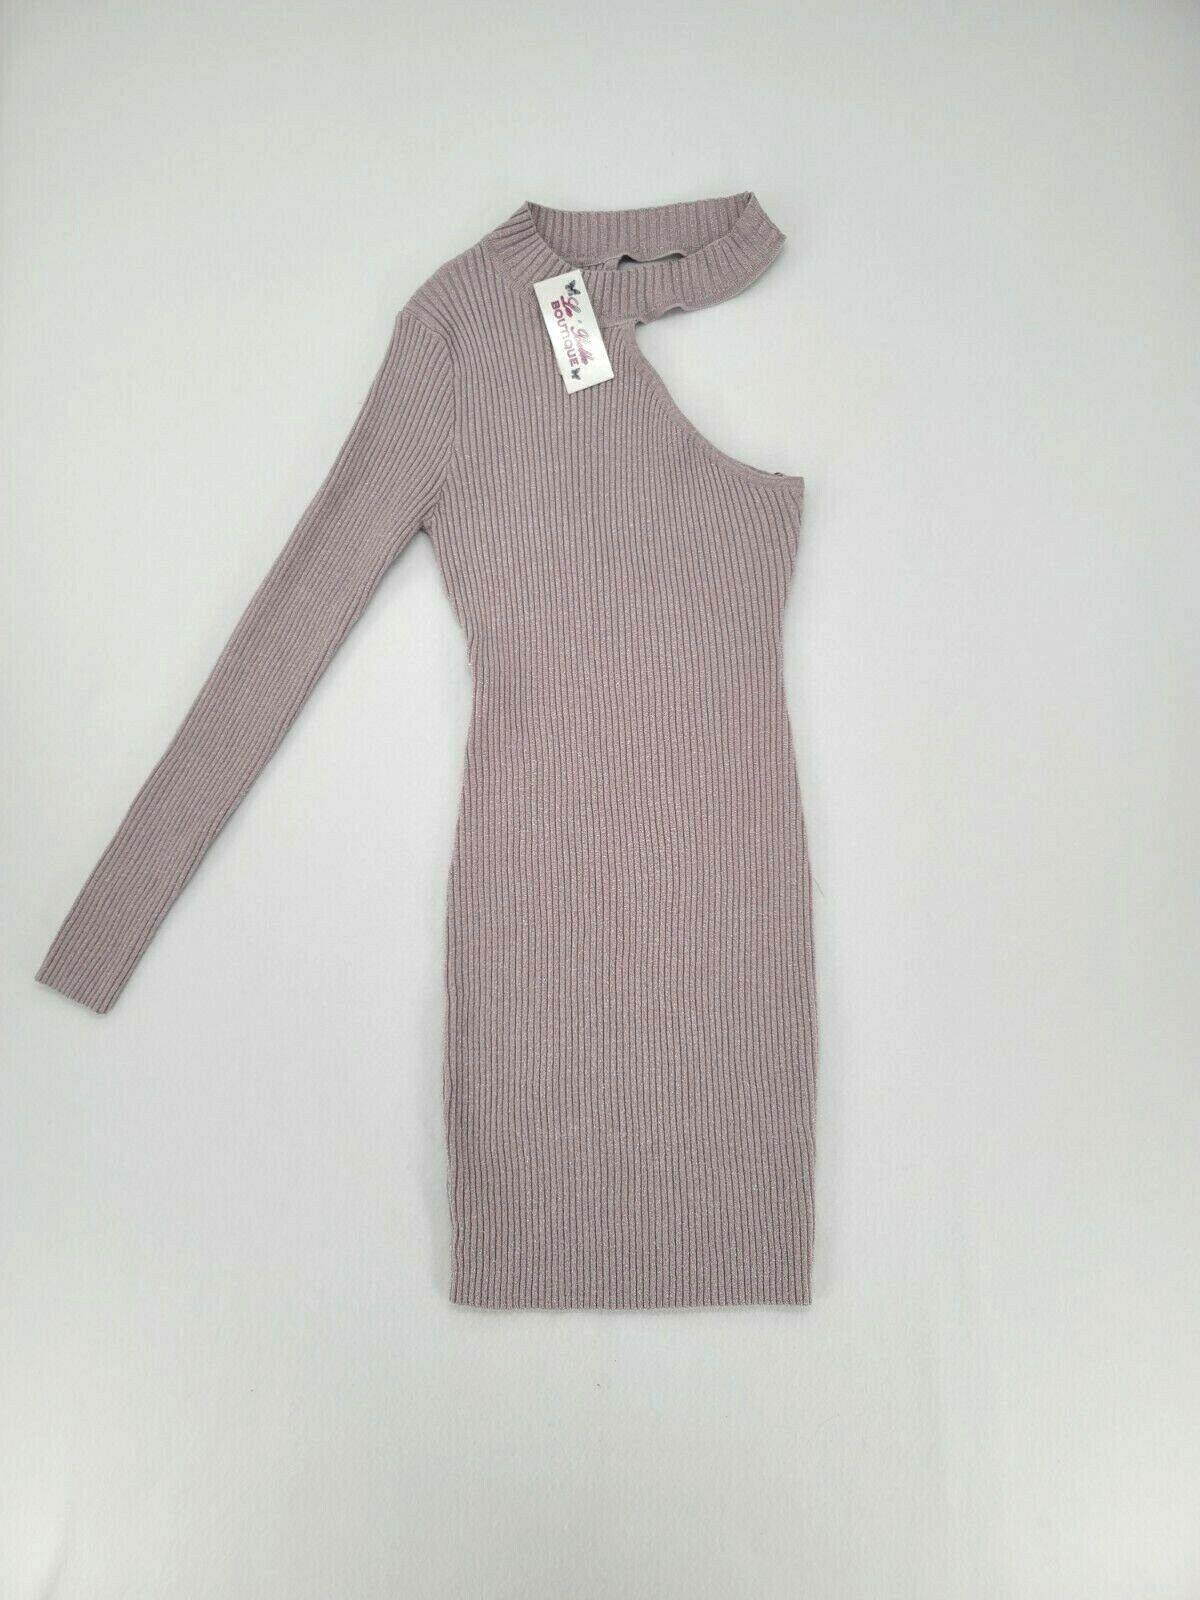 Lu Bella Boutique Off-the-Shoulder Shimmer Dusty Lavender Knit Dress Size L - SVNYFancy